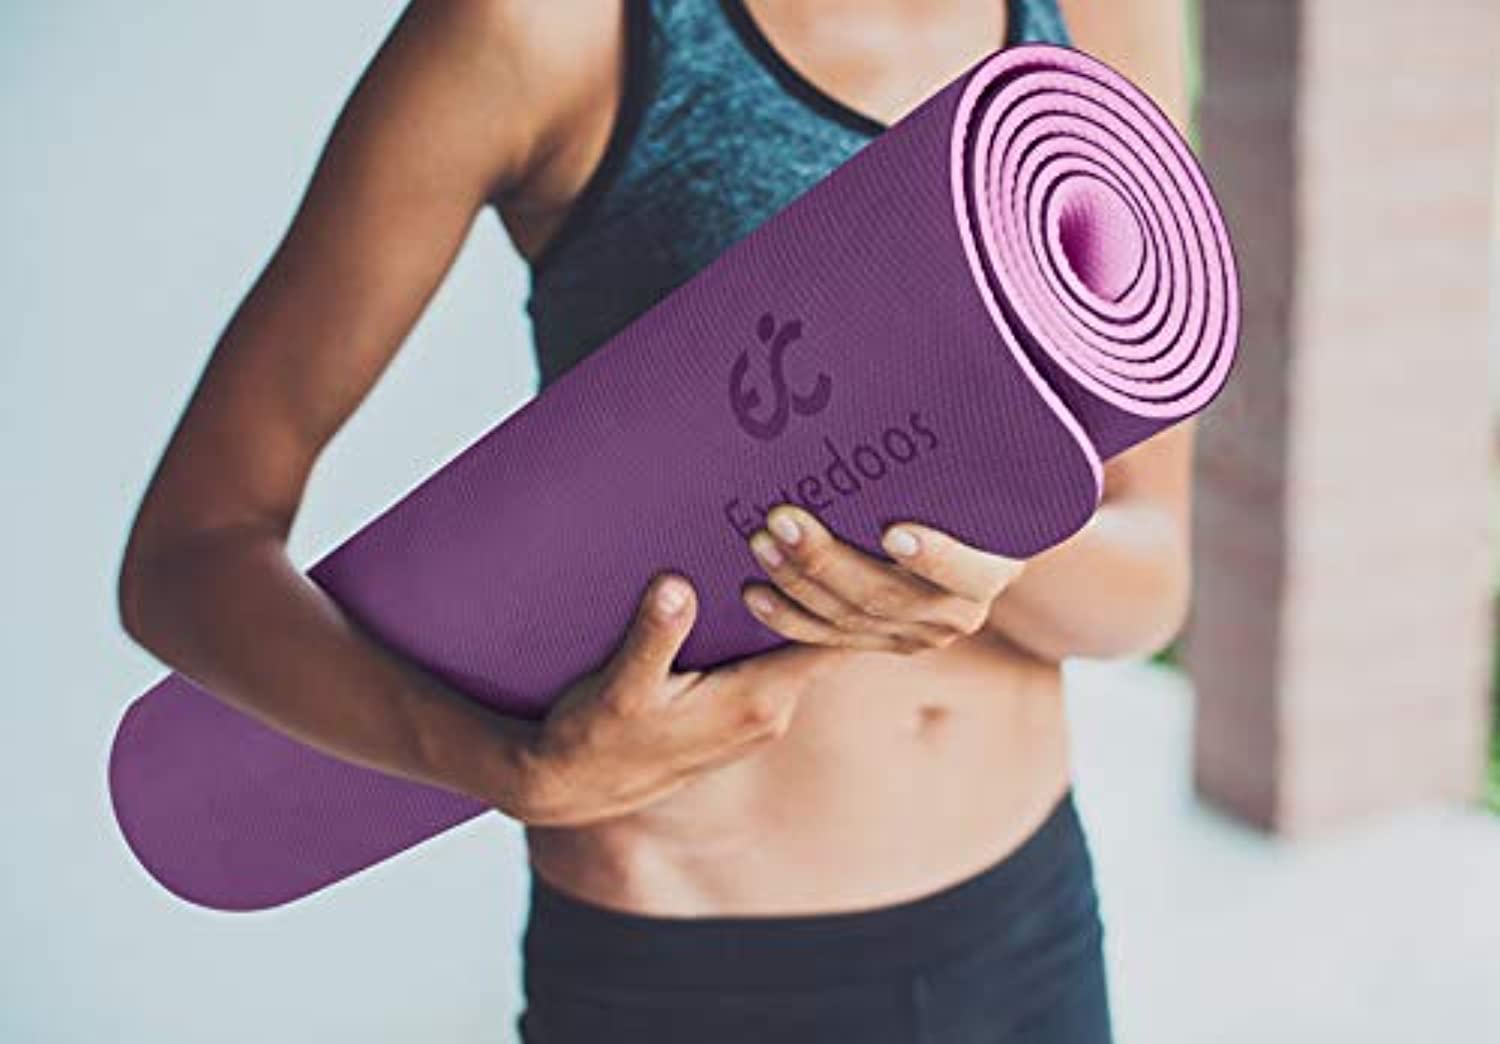 Esterilla de yoga antideslizante EVA 0.157 in de grosor, ecológica, estera  de entrenamiento plegable para piso, pilates, gimnasio en casa